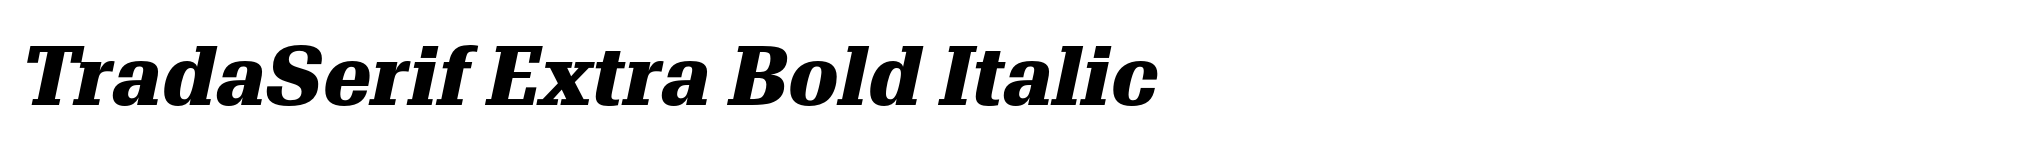 TradaSerif Extra Bold Italic image